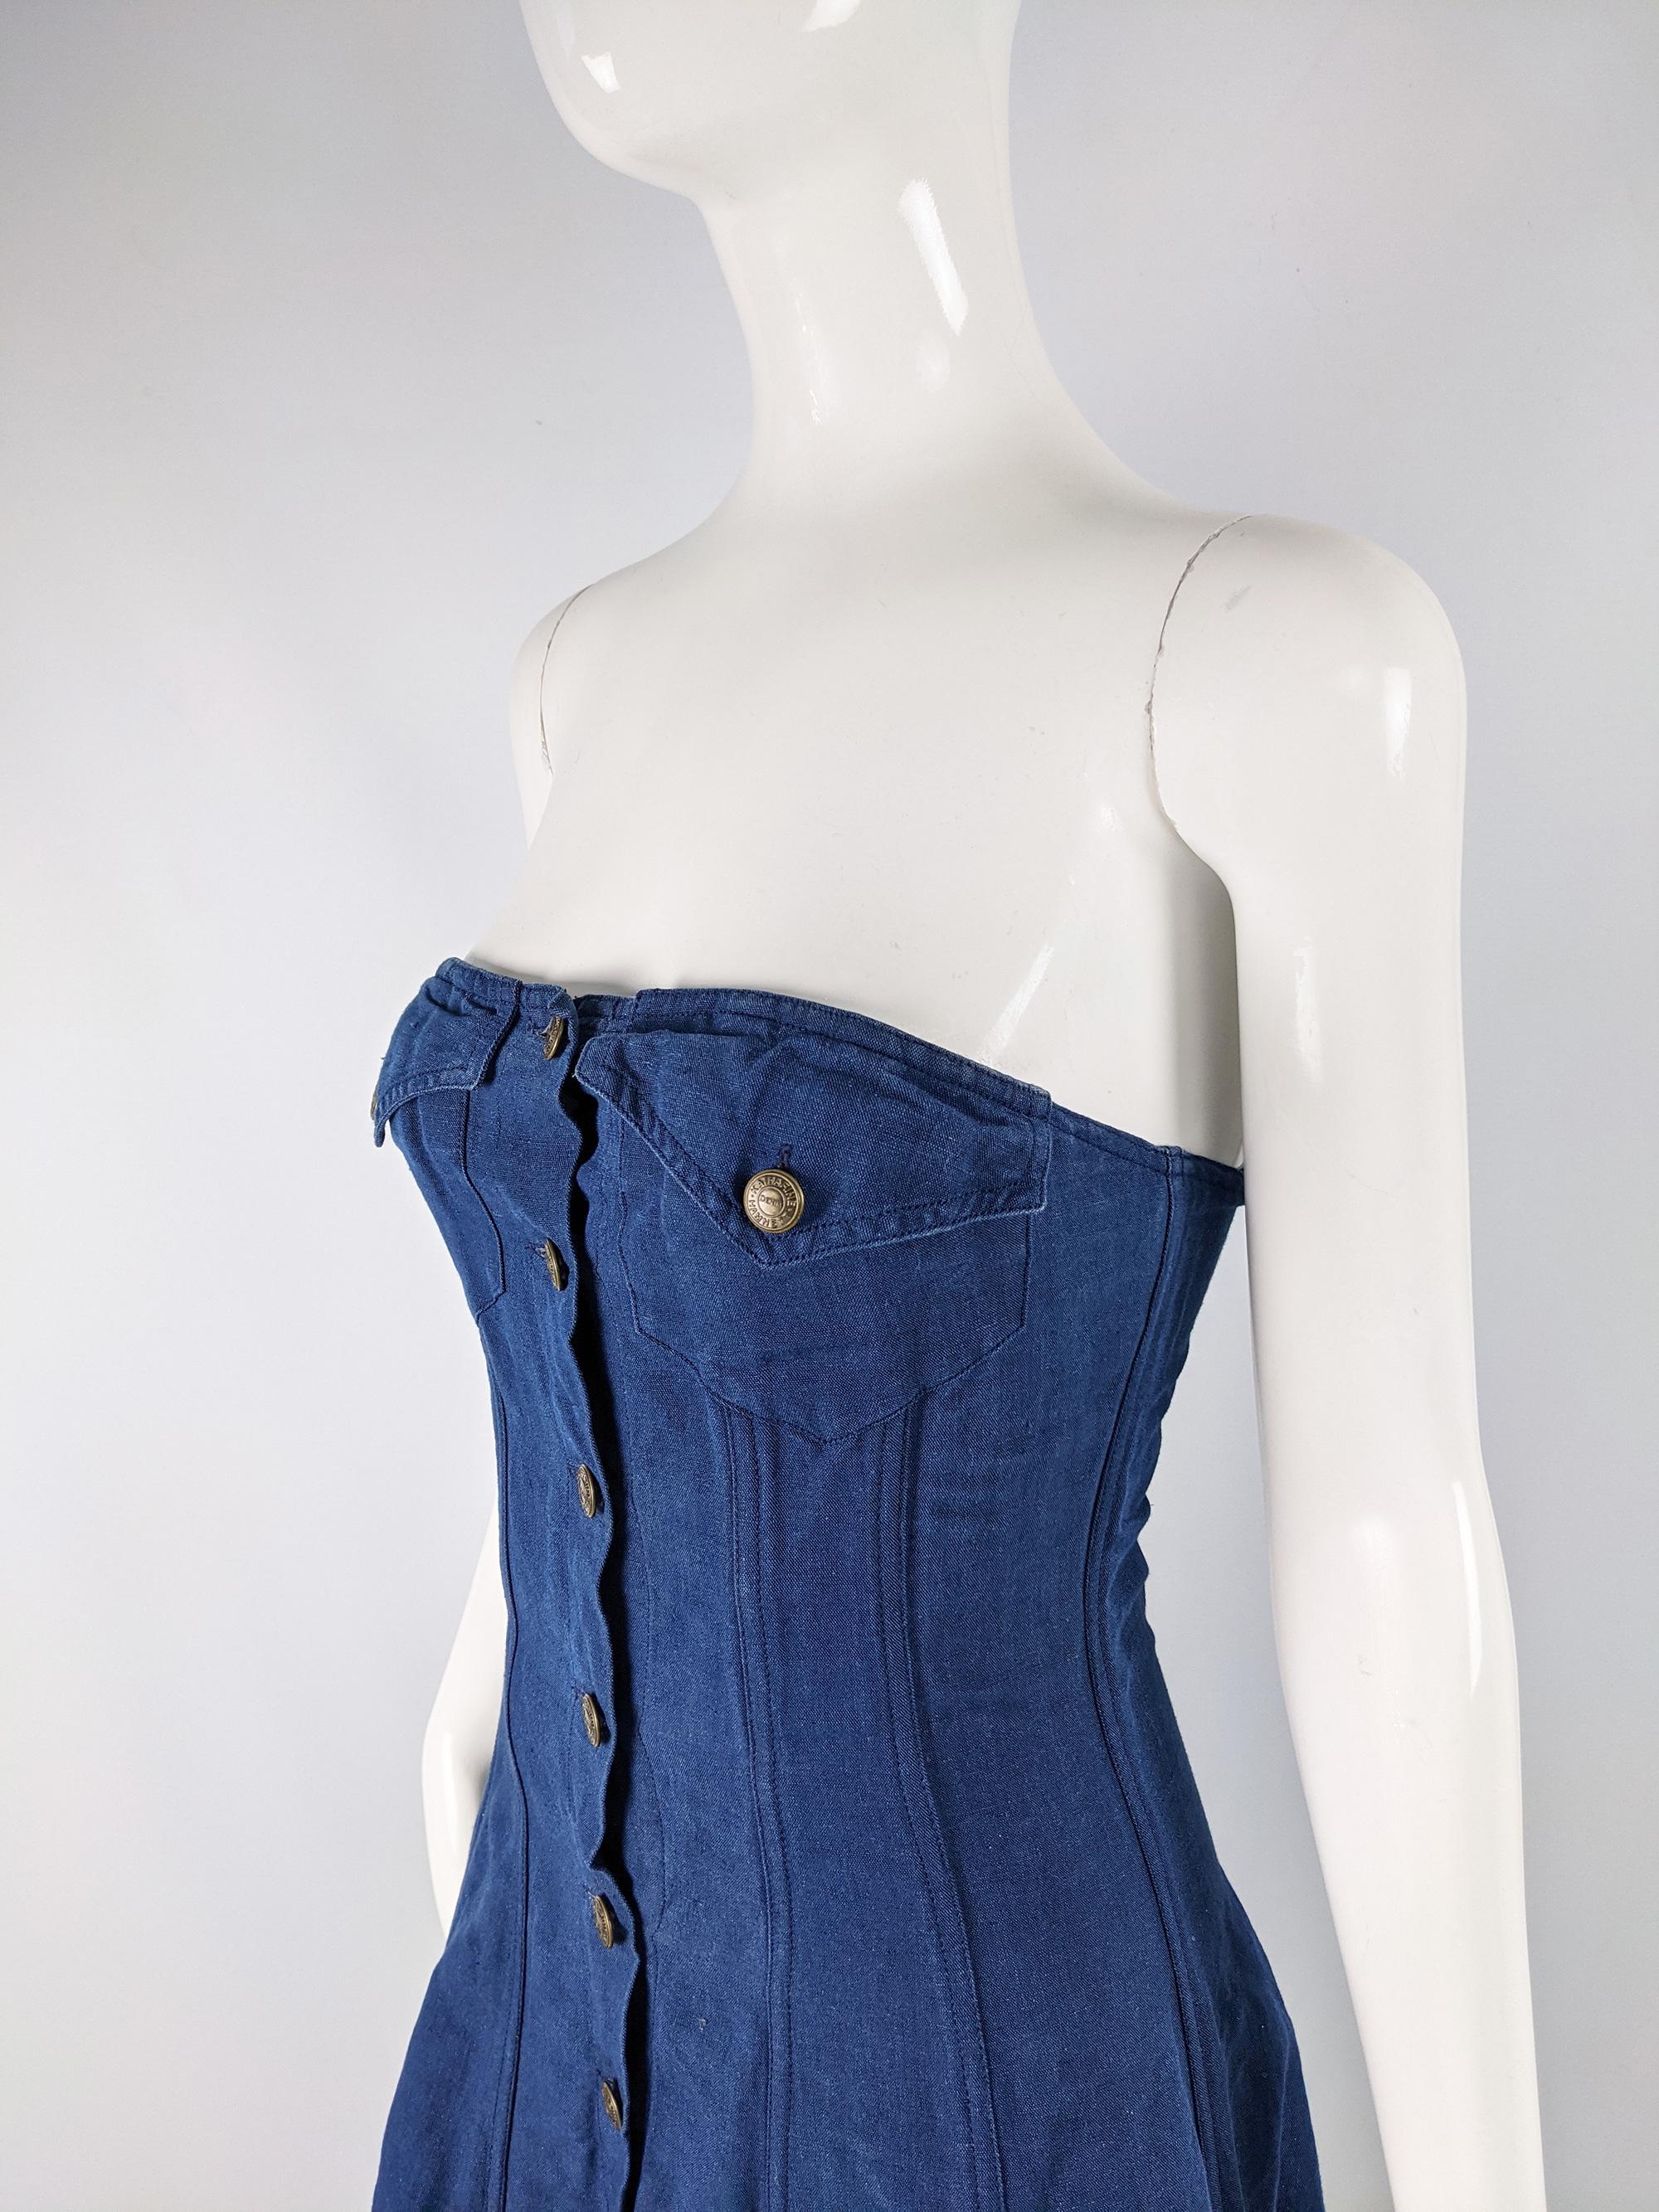 Women's Katherine Hamnett Blue Linen Boned Maxi Dress For Sale